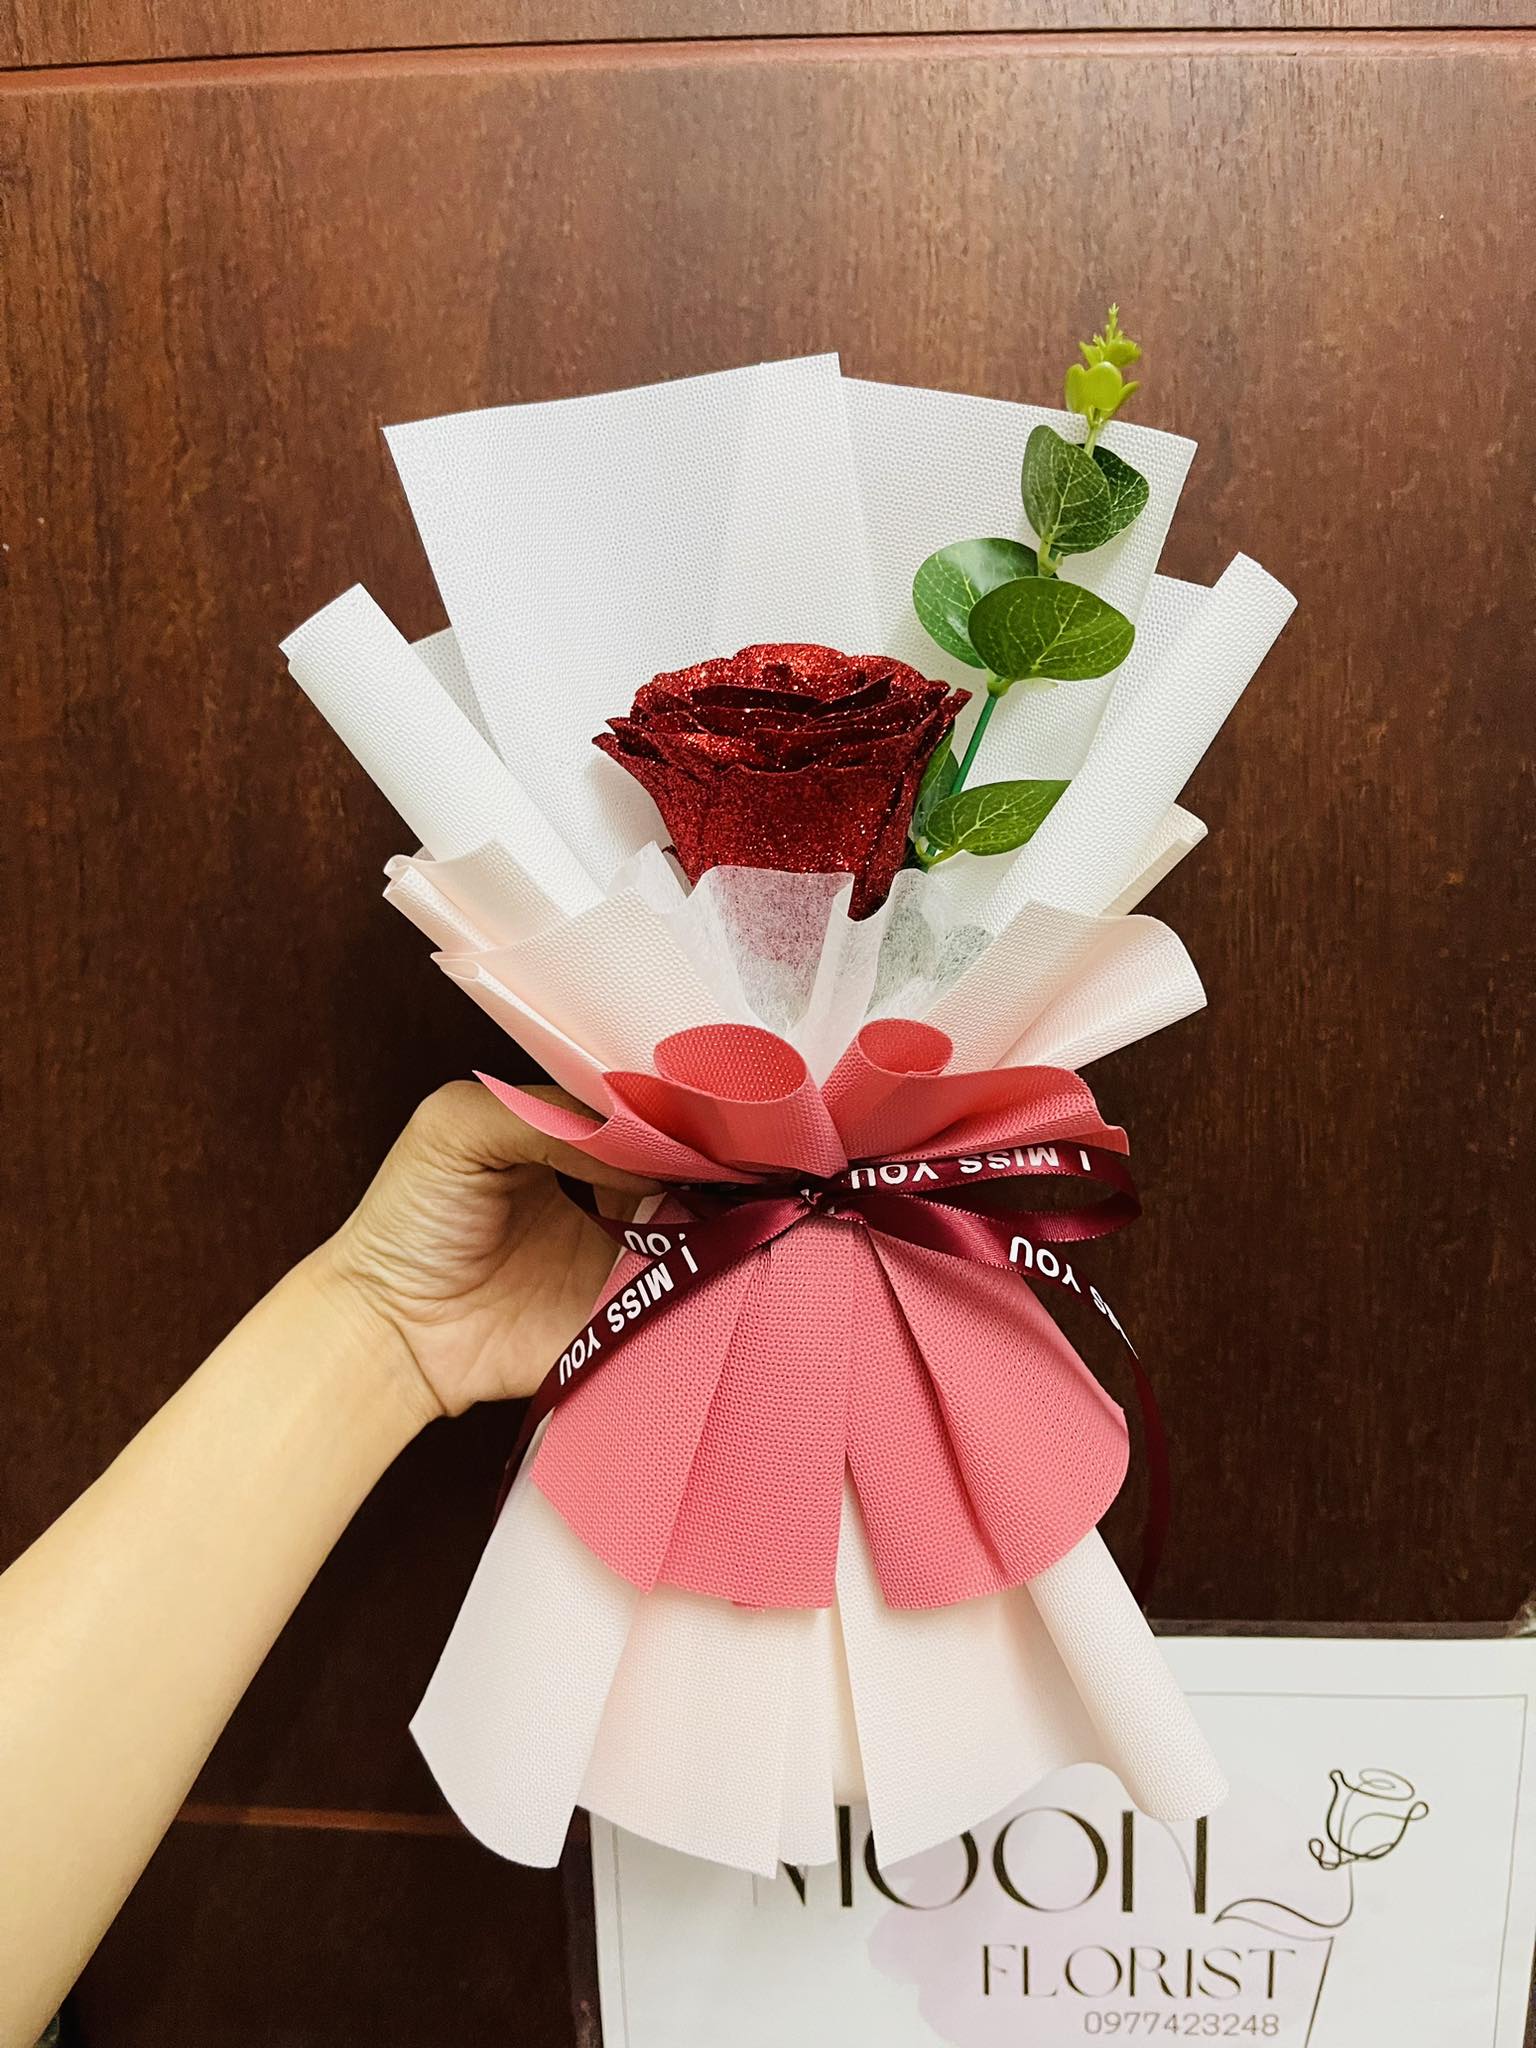 Tặng thiệp 20-10 - Túi hoa hồng sáp 3 bông kèm đèn LED quà tặng cho người yêu, hoa tặng mẹ Bó hoa hồng sáp thơm 3 bông 5 bông làm quà tặng người yêu quà tặng Valentine quà tiệc sinh nhật, đồng nghiệp